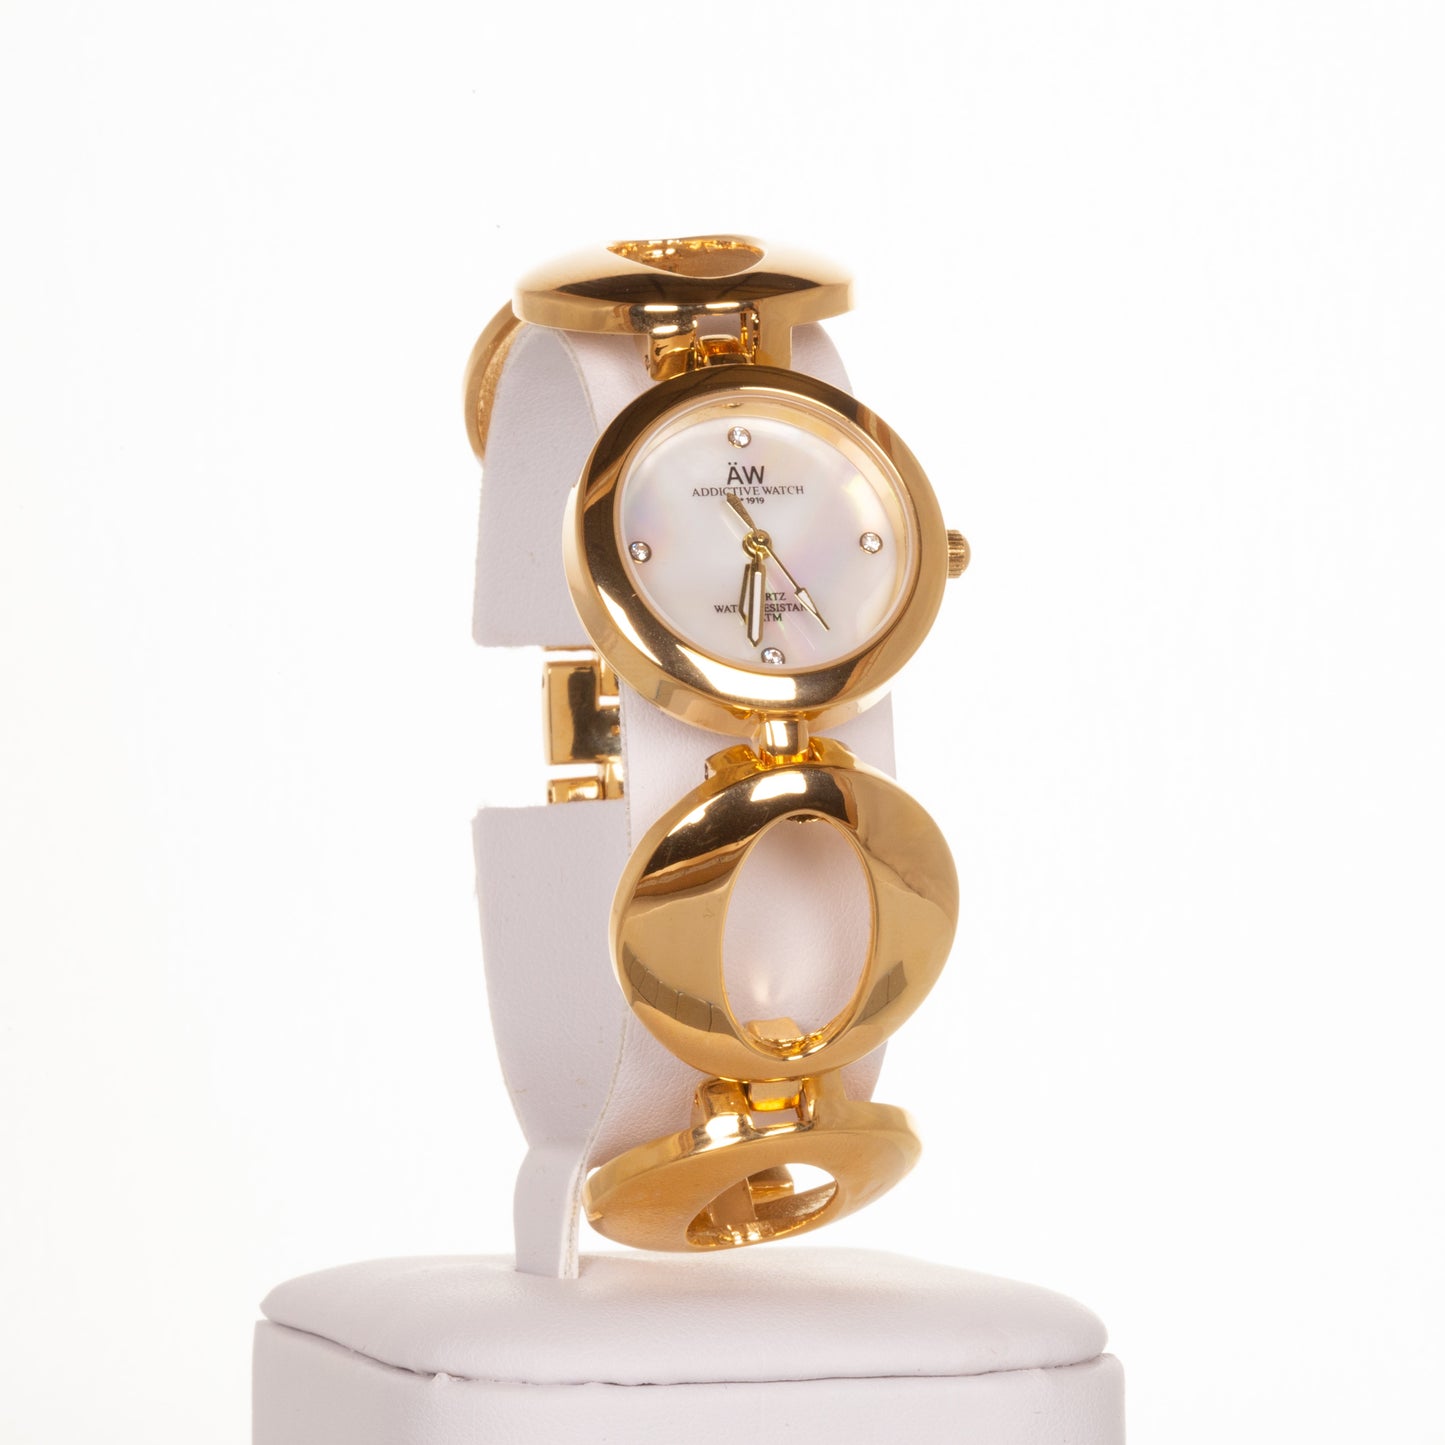 AW dámské hodinky v barvě zlata s řemínkem se symbolem nekonečna a 4 krystaly křemenu